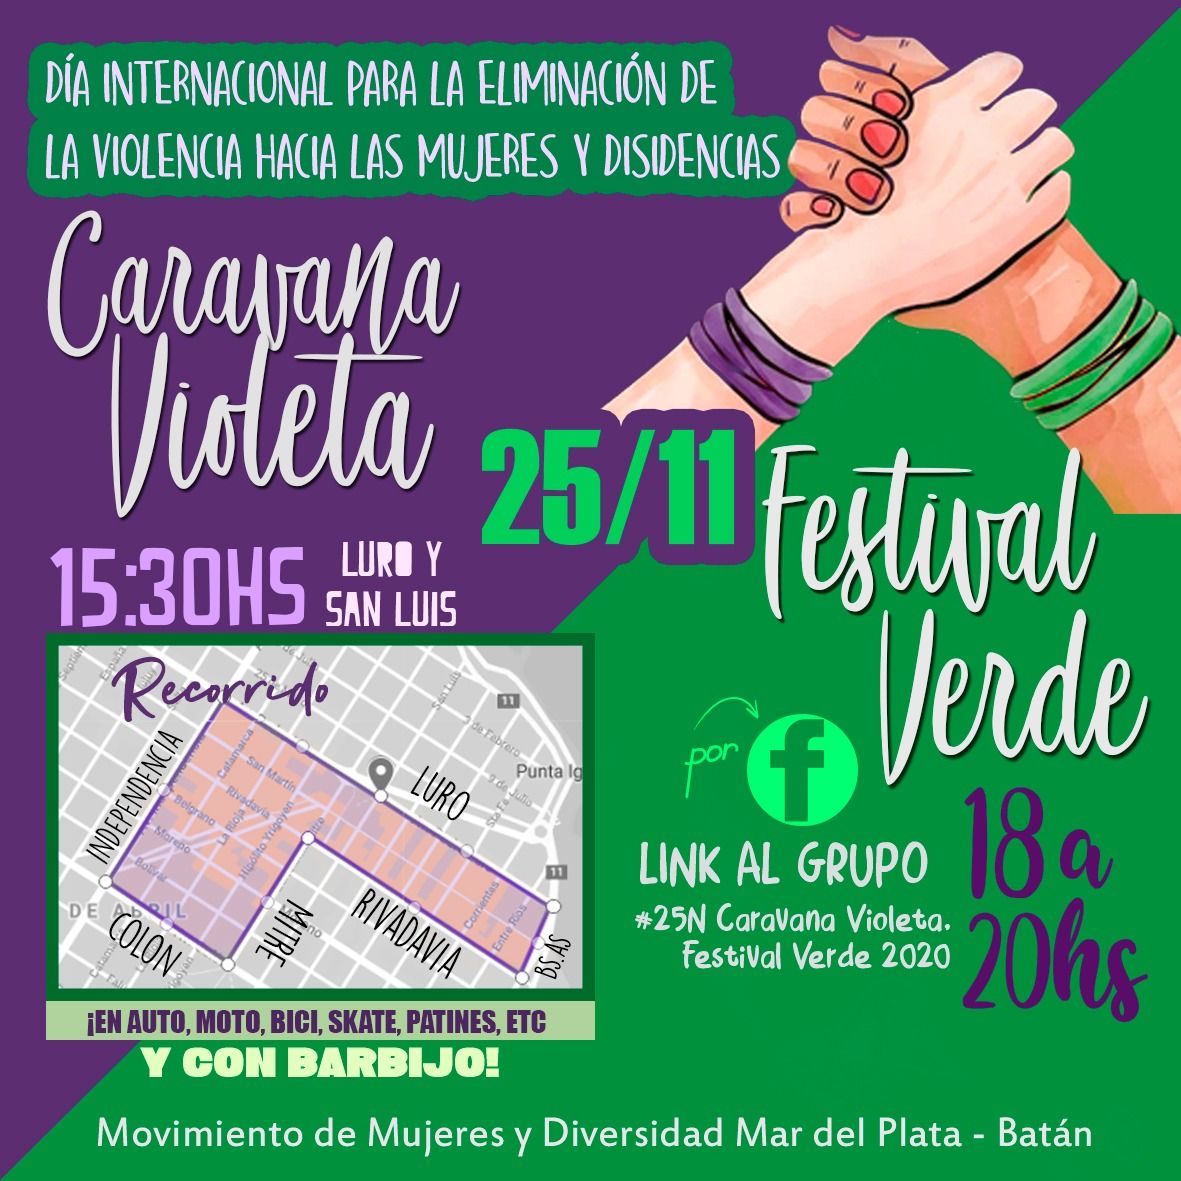 Realizarán una "caravana violeta" y un "festival verde" por el Día de la No Violencia